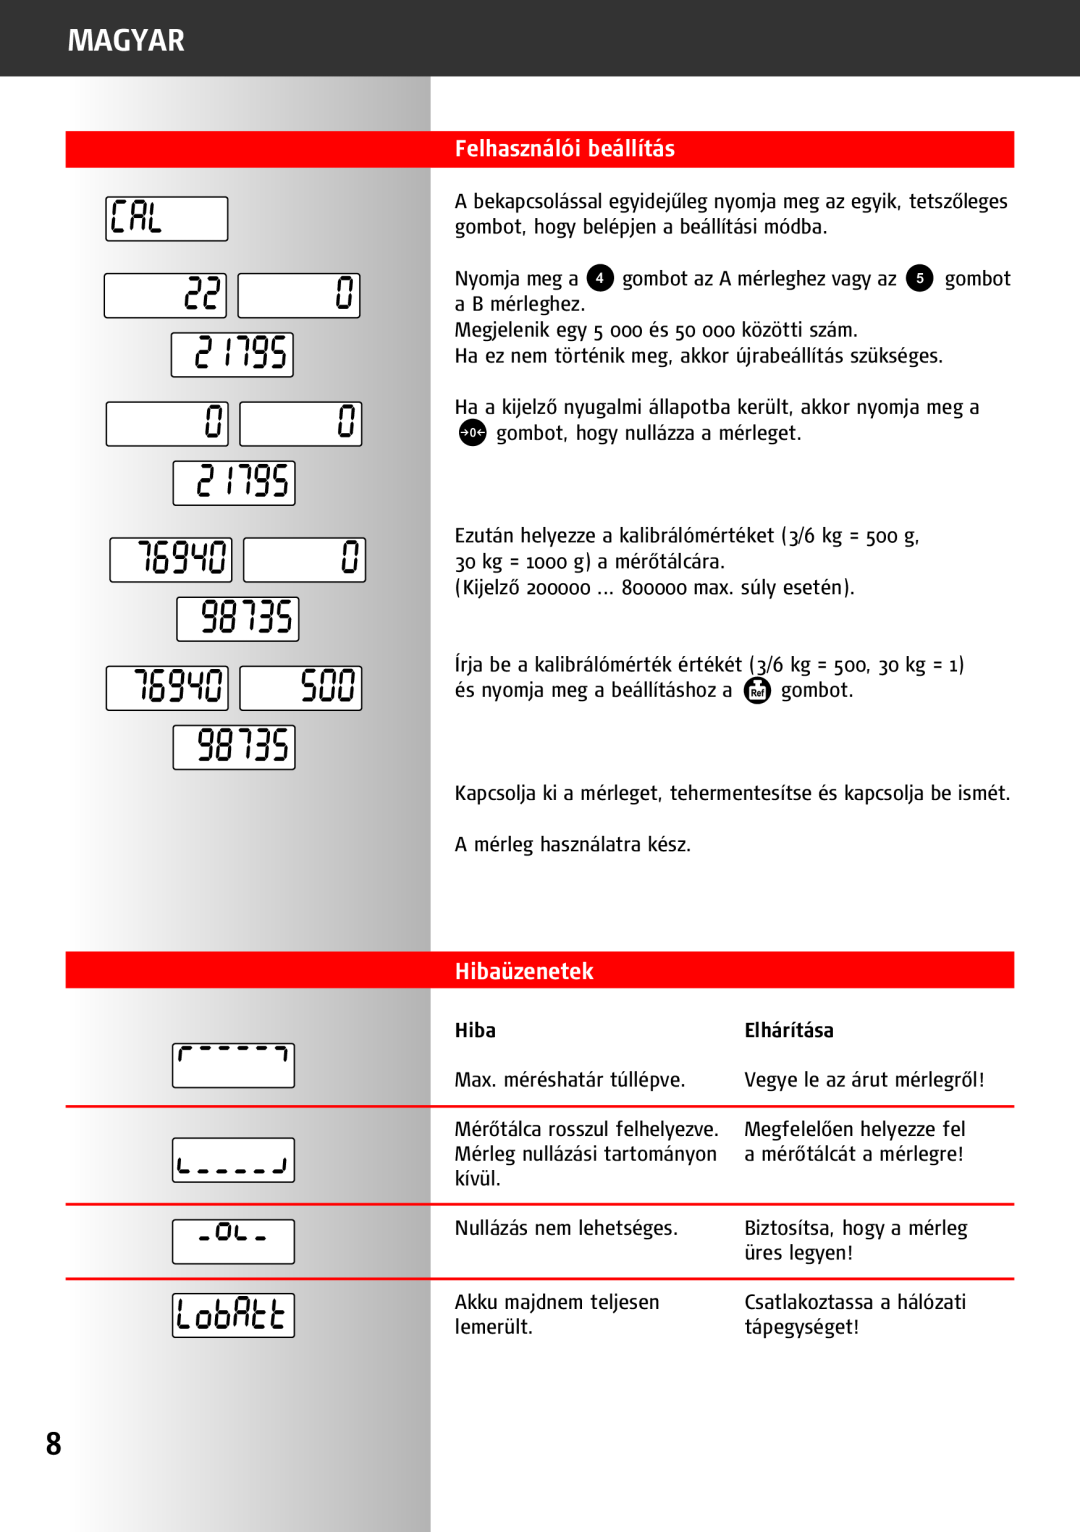 Soehnle 9220 manual Felhasználói beállítás, Hibaüzenetek, Magyar, Elhárítása 